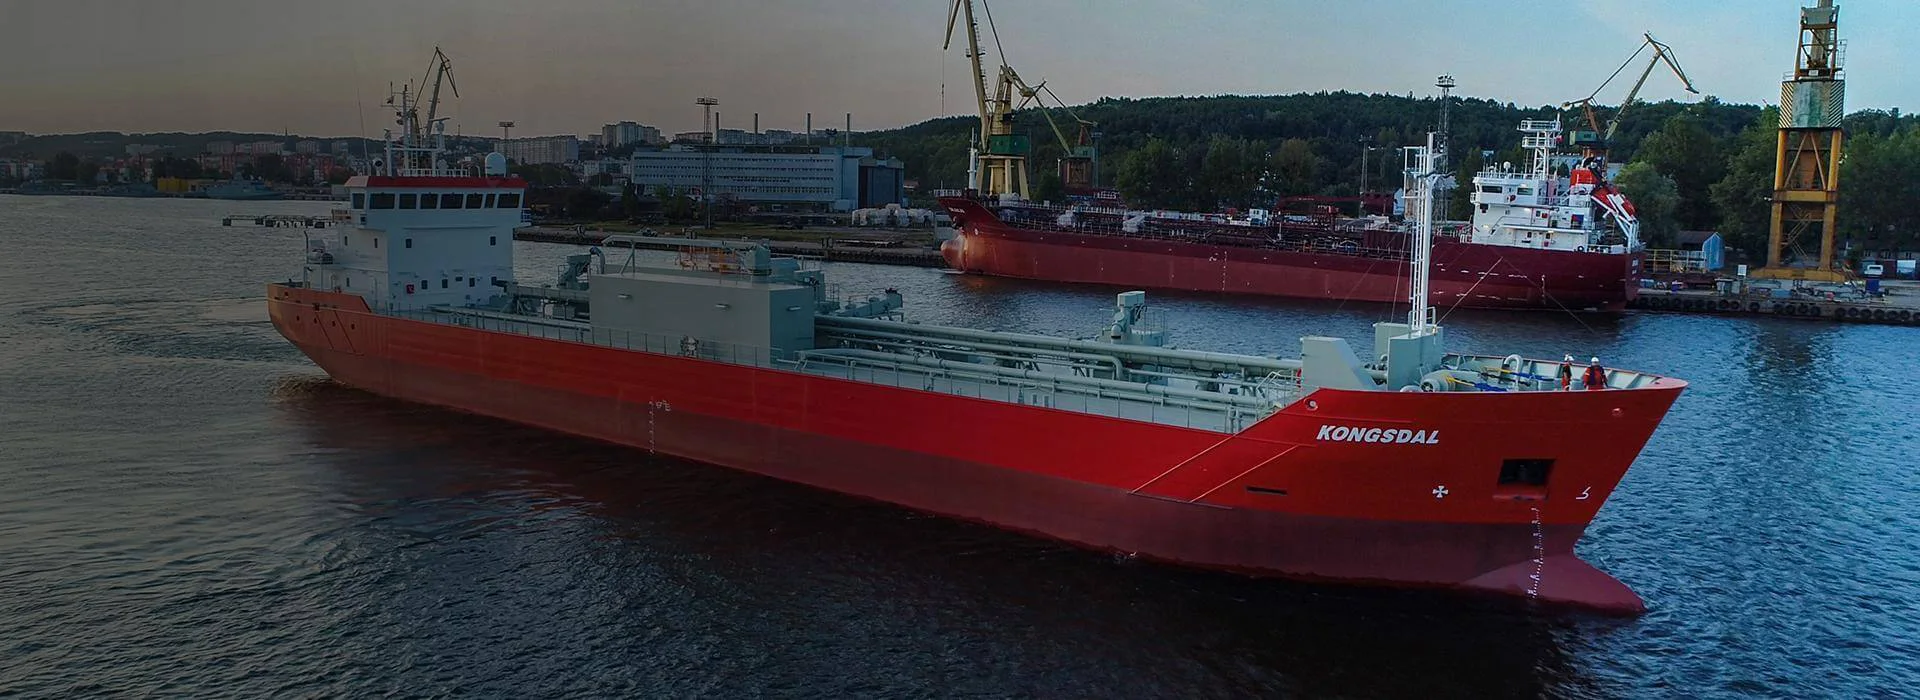 duży statek czerwony